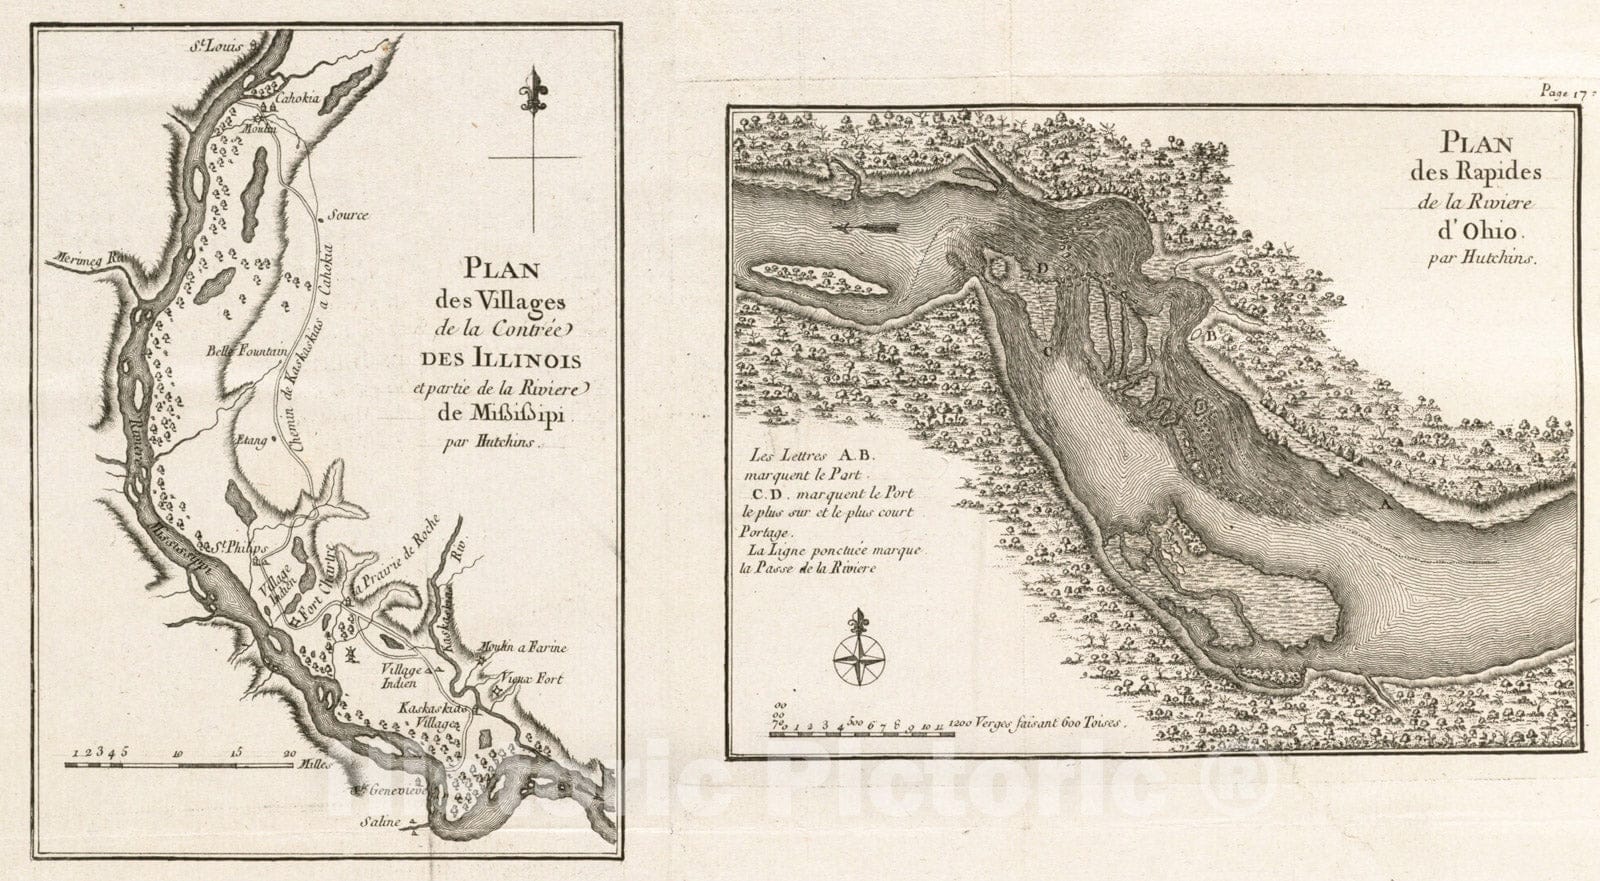 Historical Map, 1781 Plan des Villages de la contree des Illinois et Partie de la Riviere de Mississipi ; Plan des Rapides de la Riviere d'Ohio, Vintage Wall Art